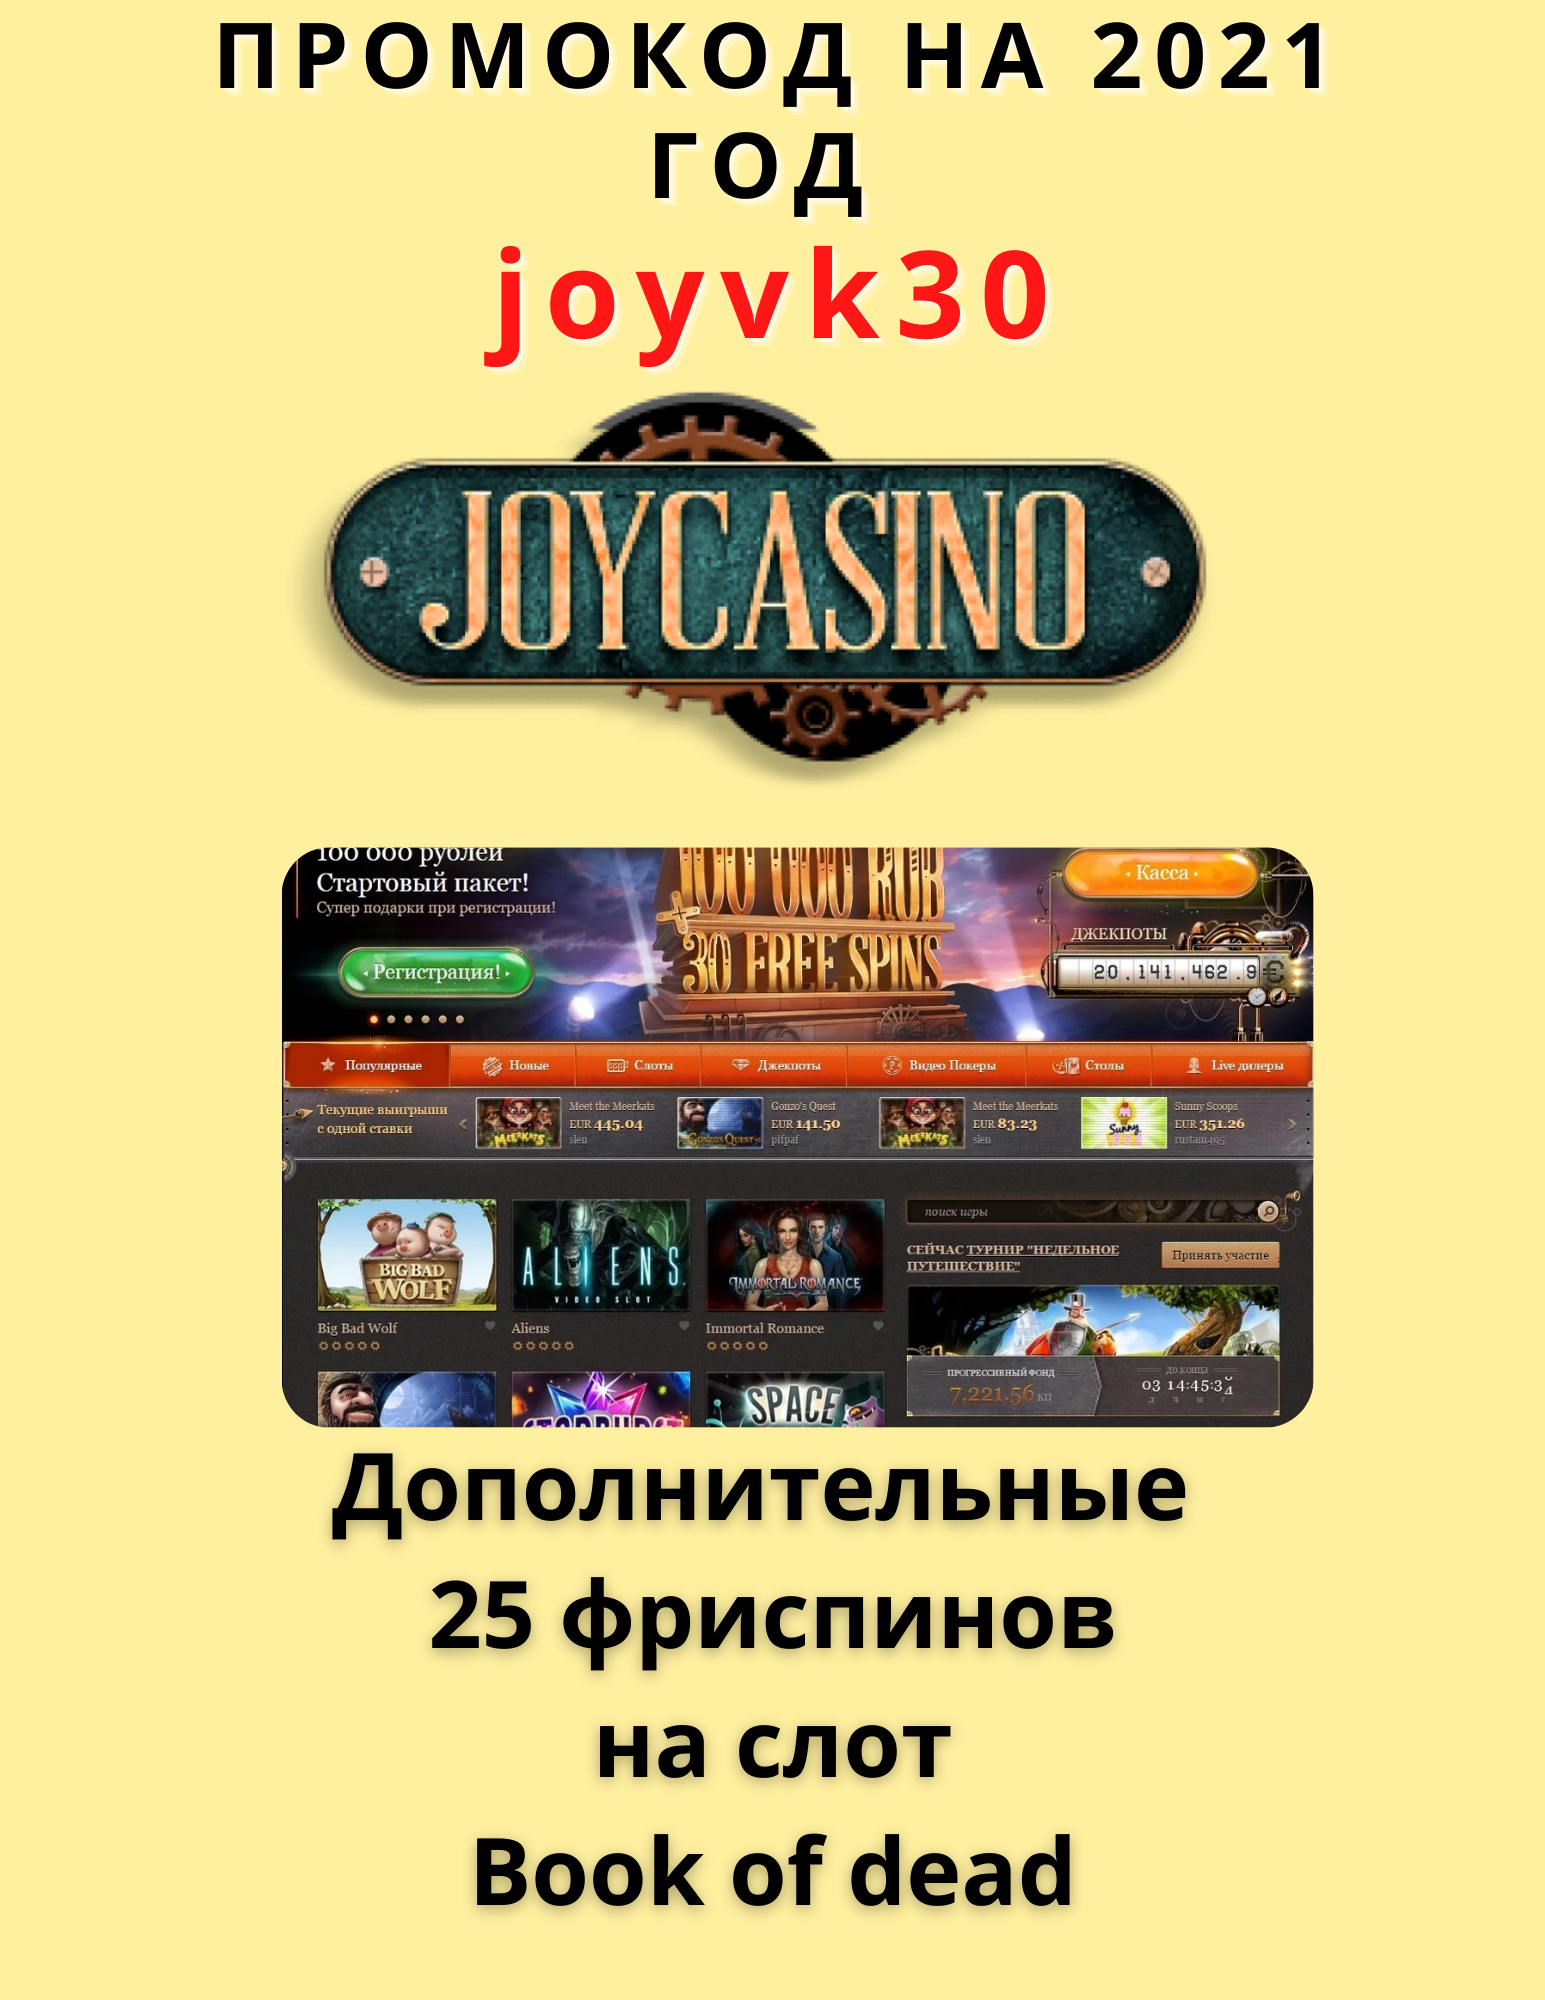 Джойказино бездепозитный бонус joycasino official game. Бездепозитный бонус в казино. Joycasino бездепозитный бонус. Промо код Joycasino. Джой казино бездепозитный бонус.